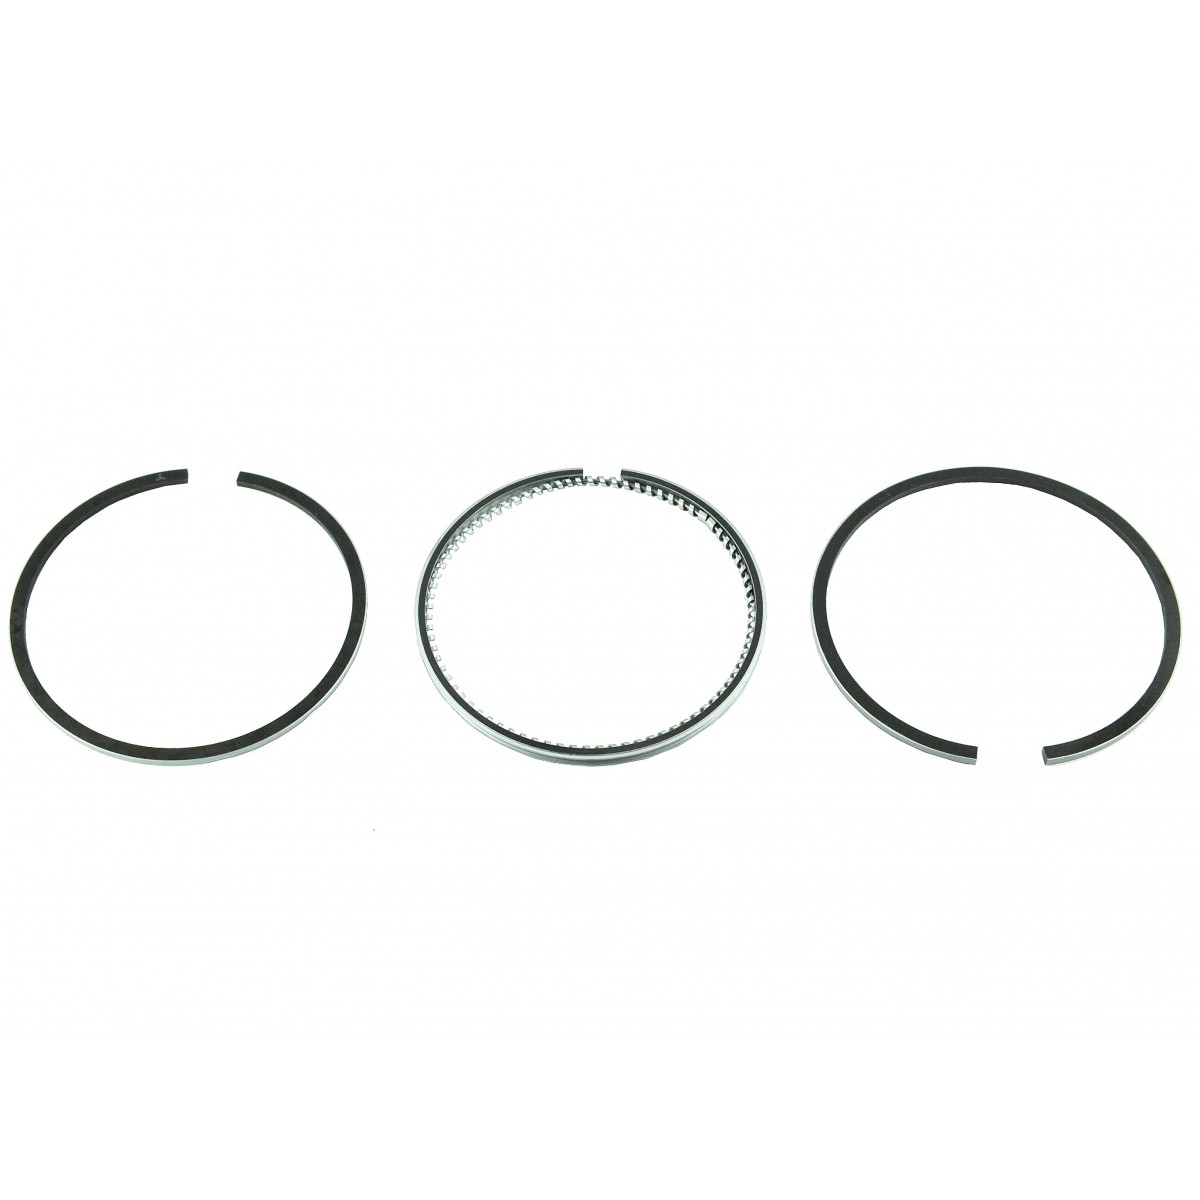 Piston rings Mitsubishi (2,50 + 2 + 4), S3L-2, S4L, S3L, GX3600 MT25 MT28 MT36 GX34 GX37 GX371 GX401 GX461